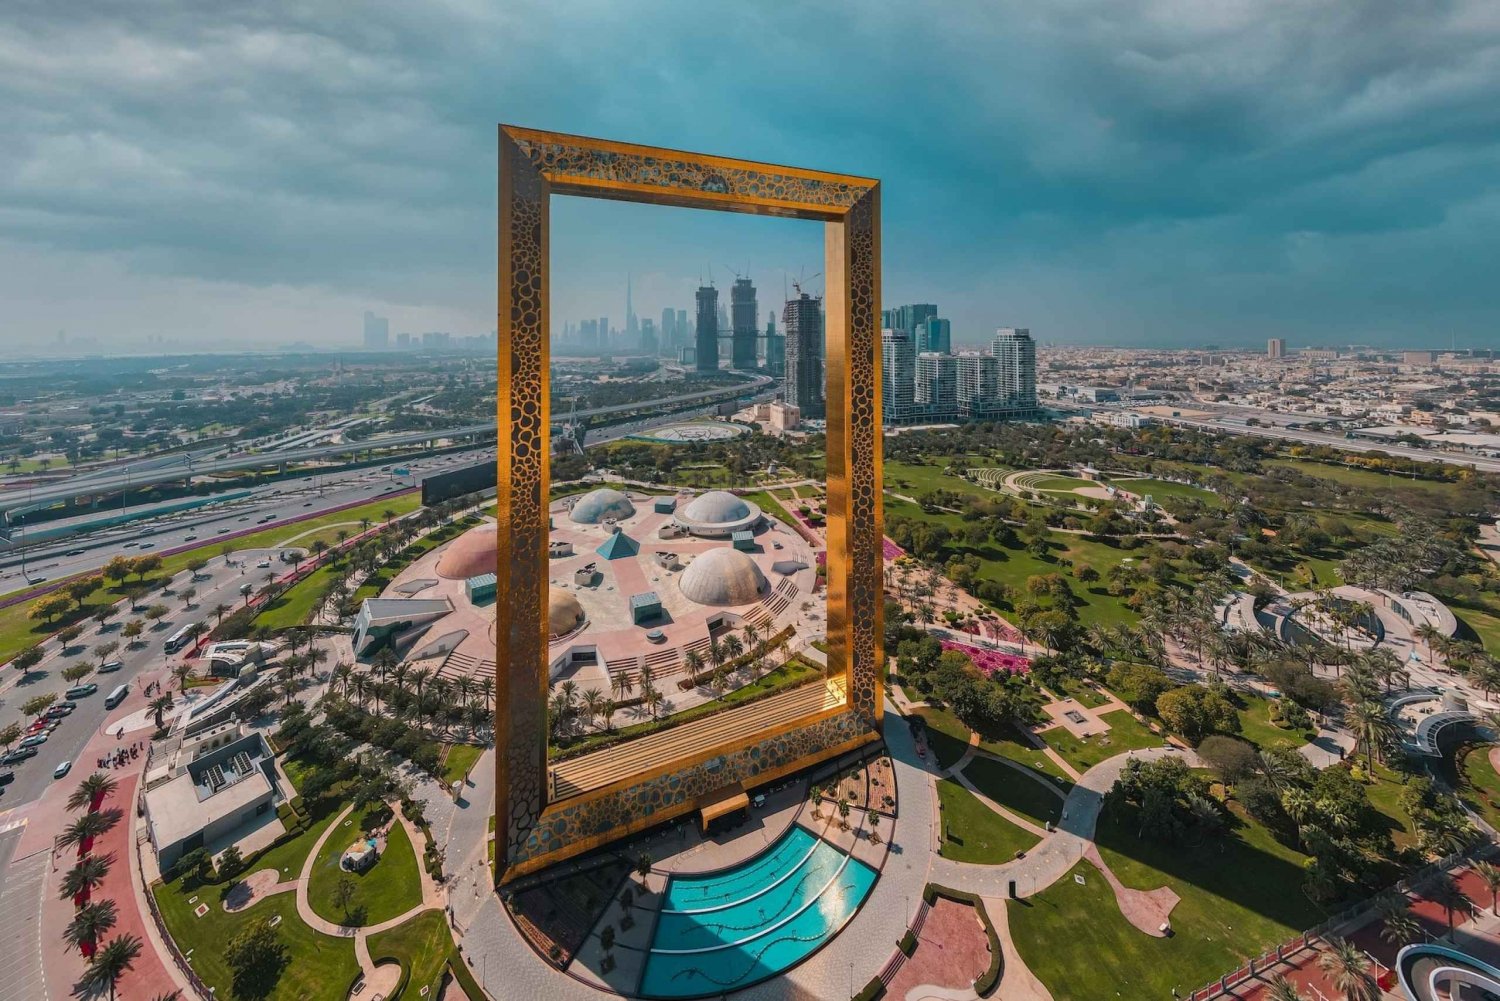 Dubai Stadtrundfahrt: Geführte Tour